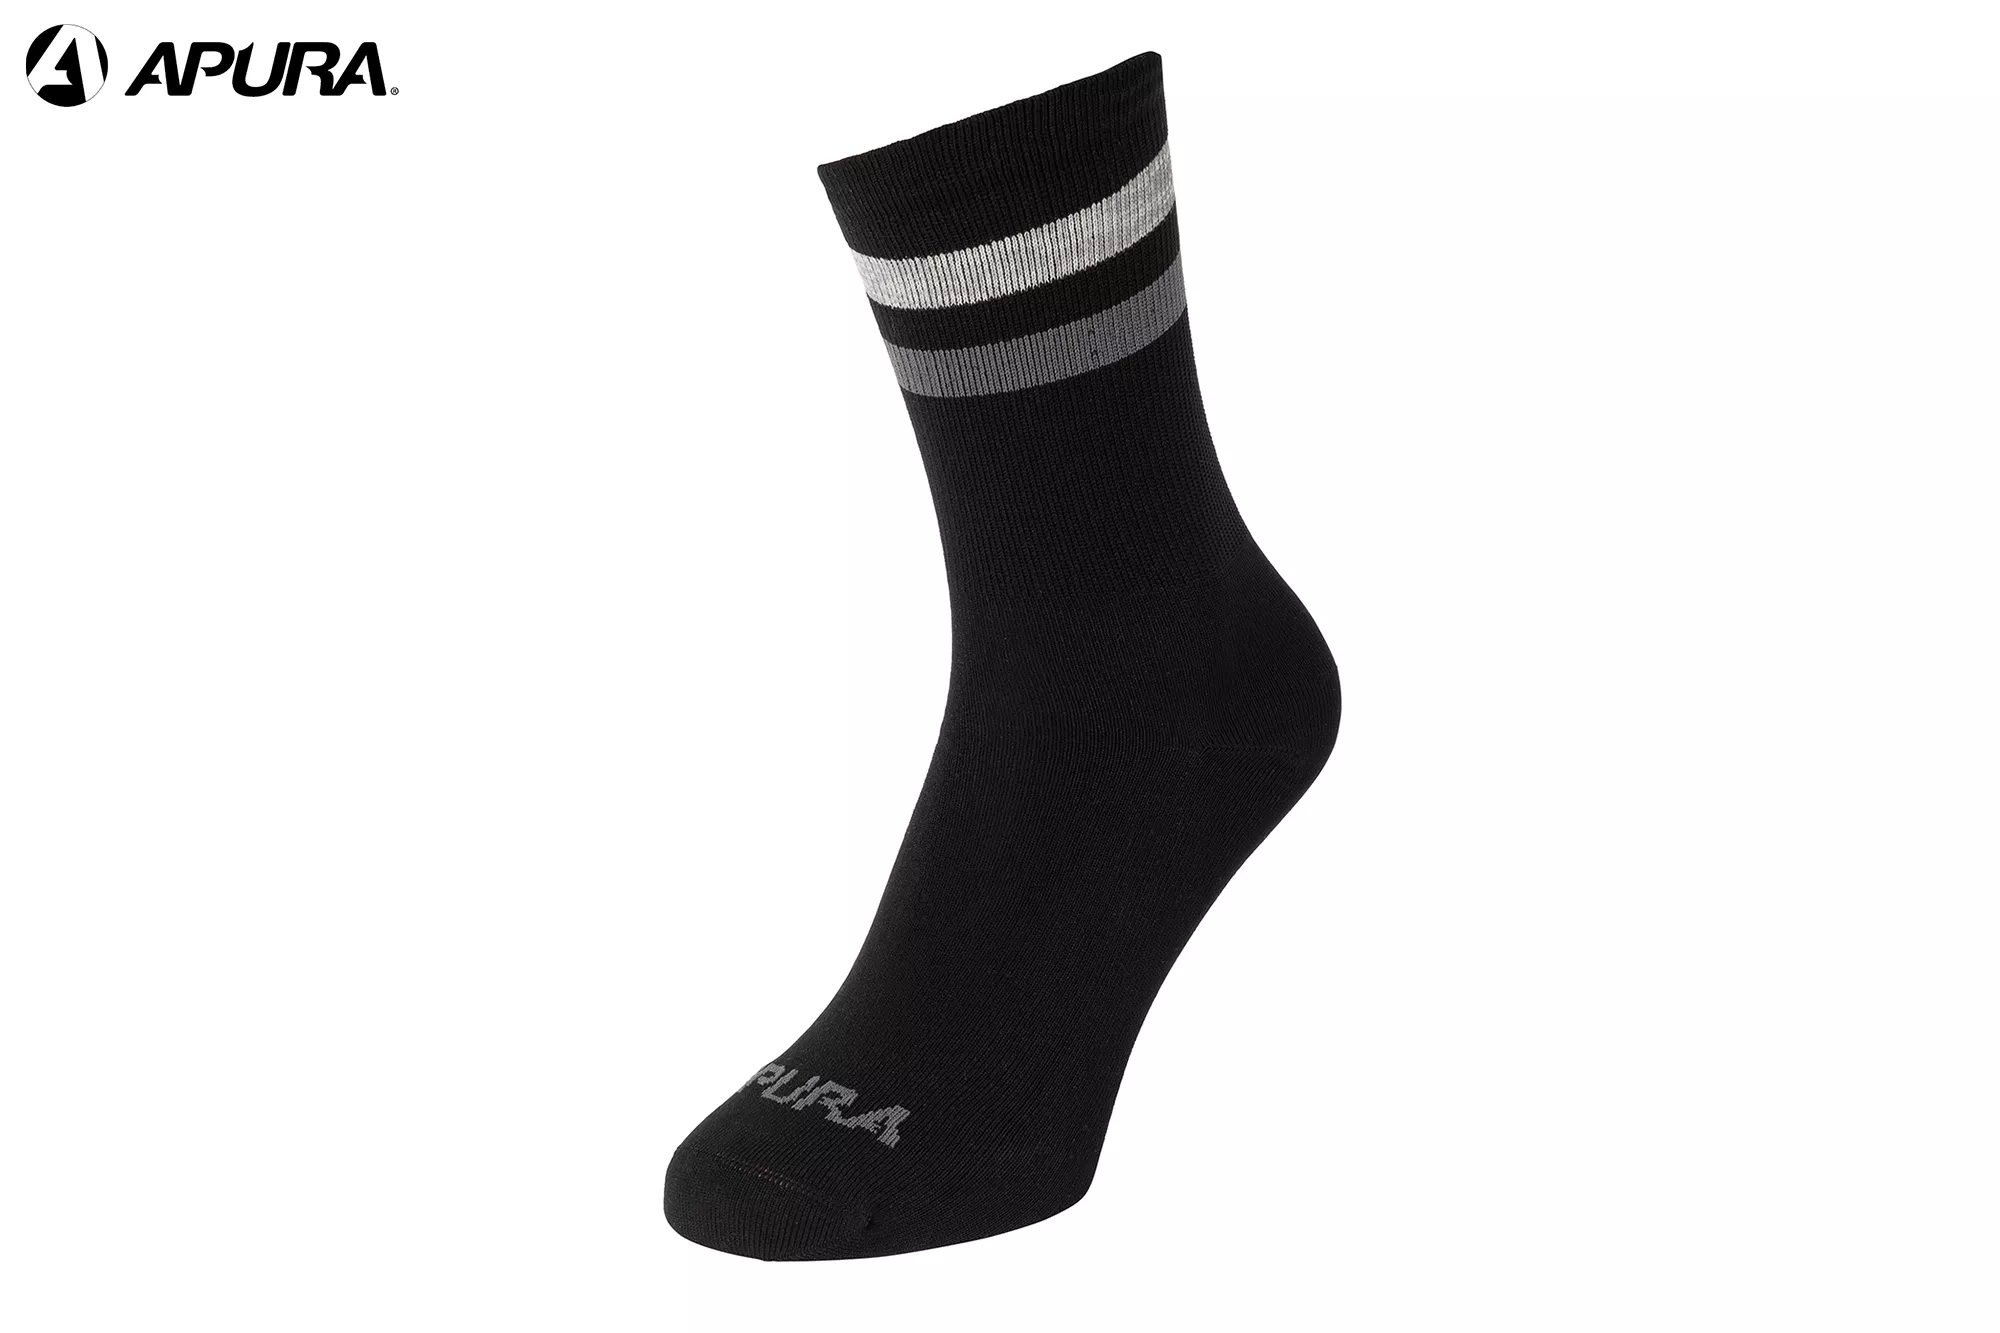 APURA High-Vis Socken - schwarz / reflektierend